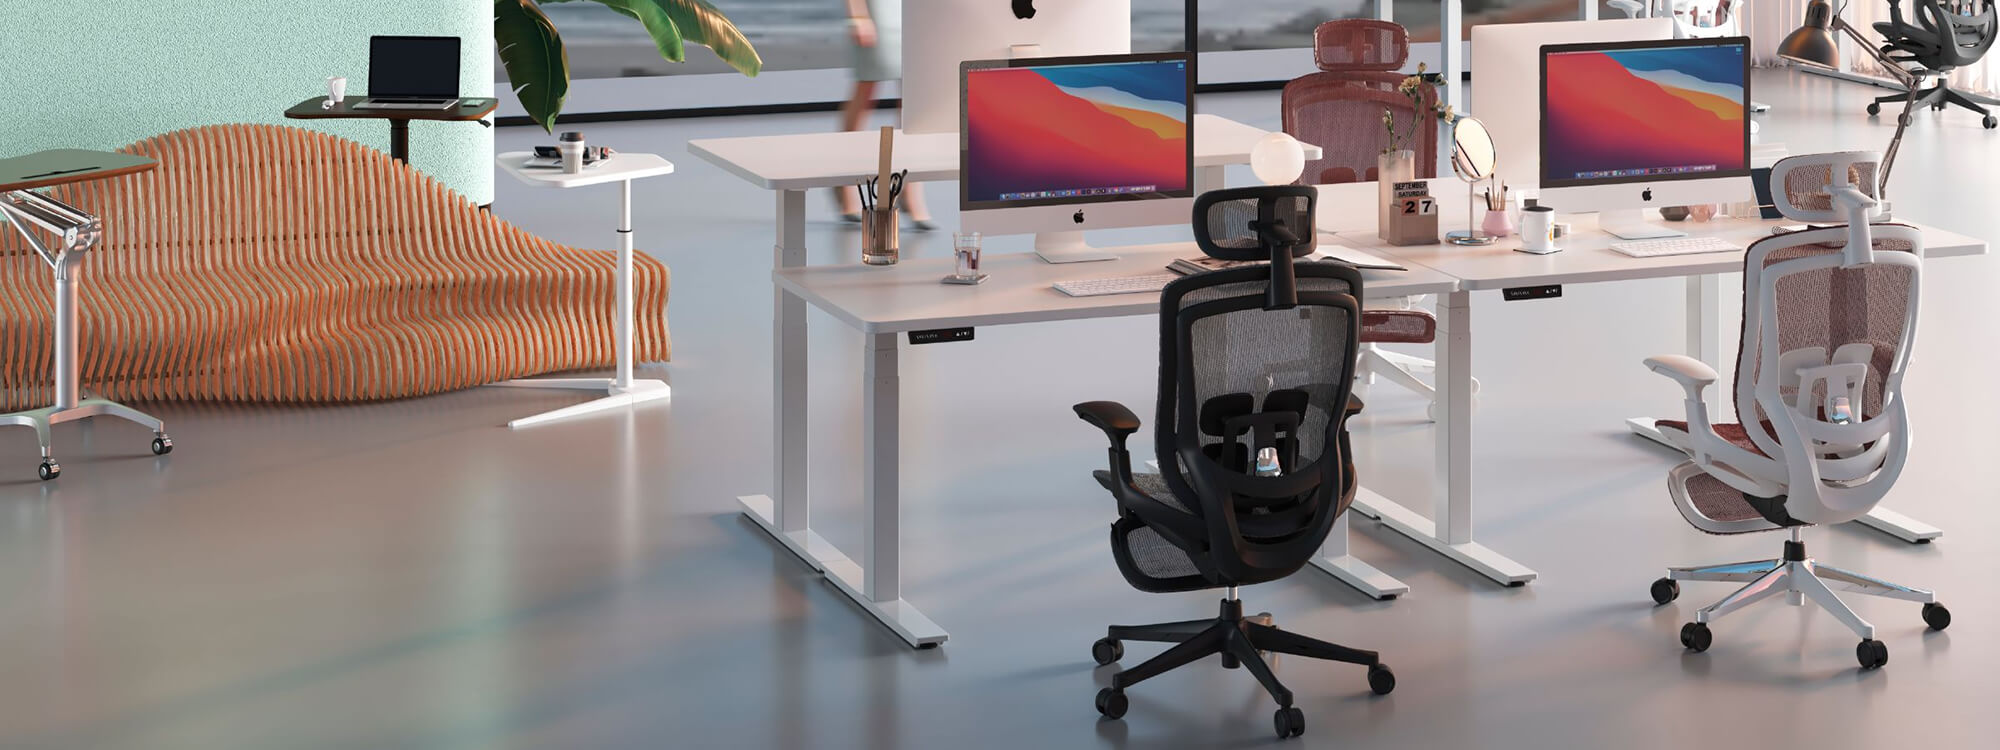 На трех- и двухместных рабочих местах в офисе установлено пять черных офисных стульев.